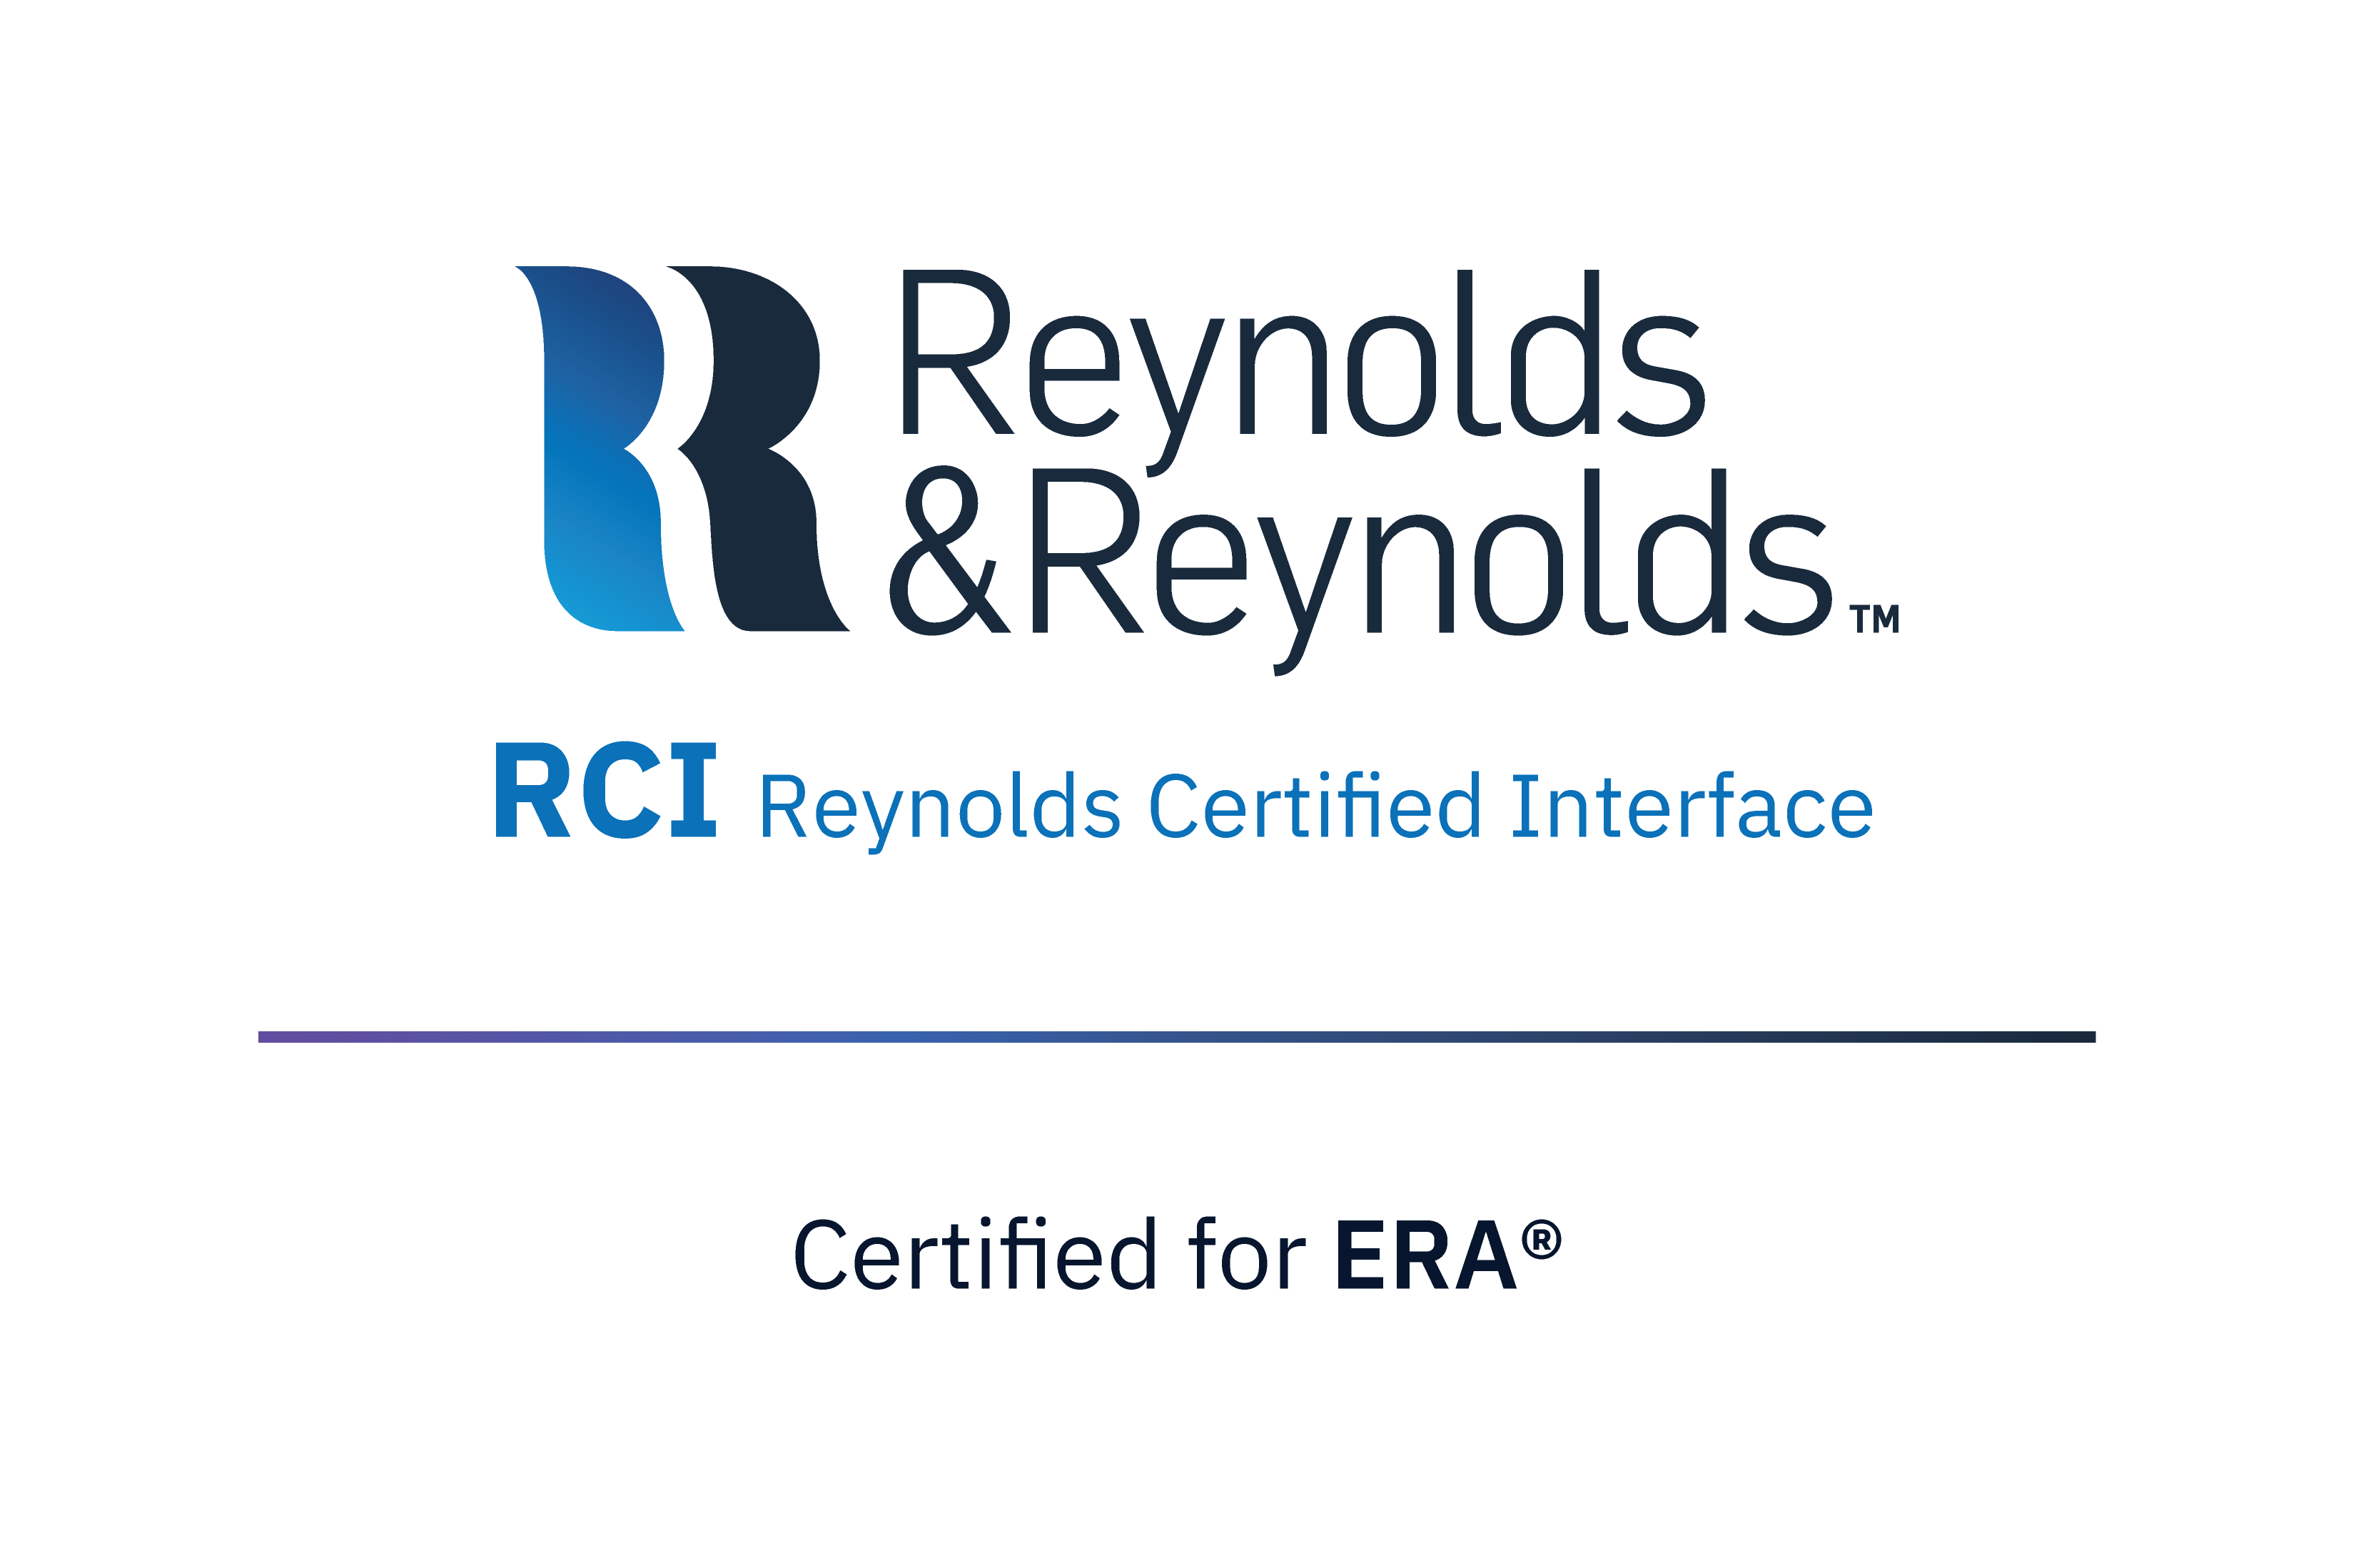 Reynolds & Reynolds Partenaires EasyDeal